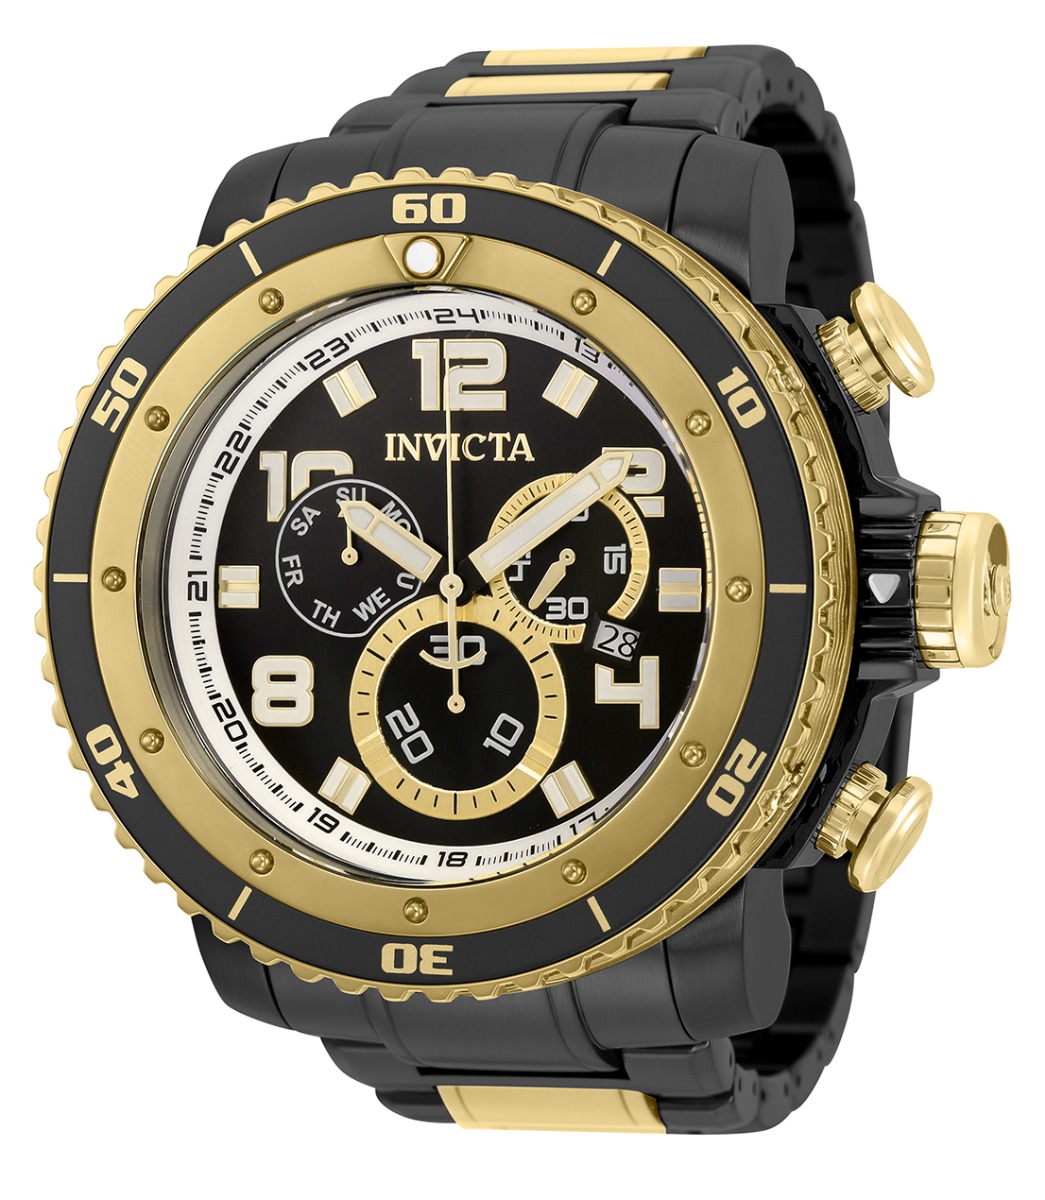 Invicta Sea Hunter Men's Watch - 58mm, Black, Gold (35019)